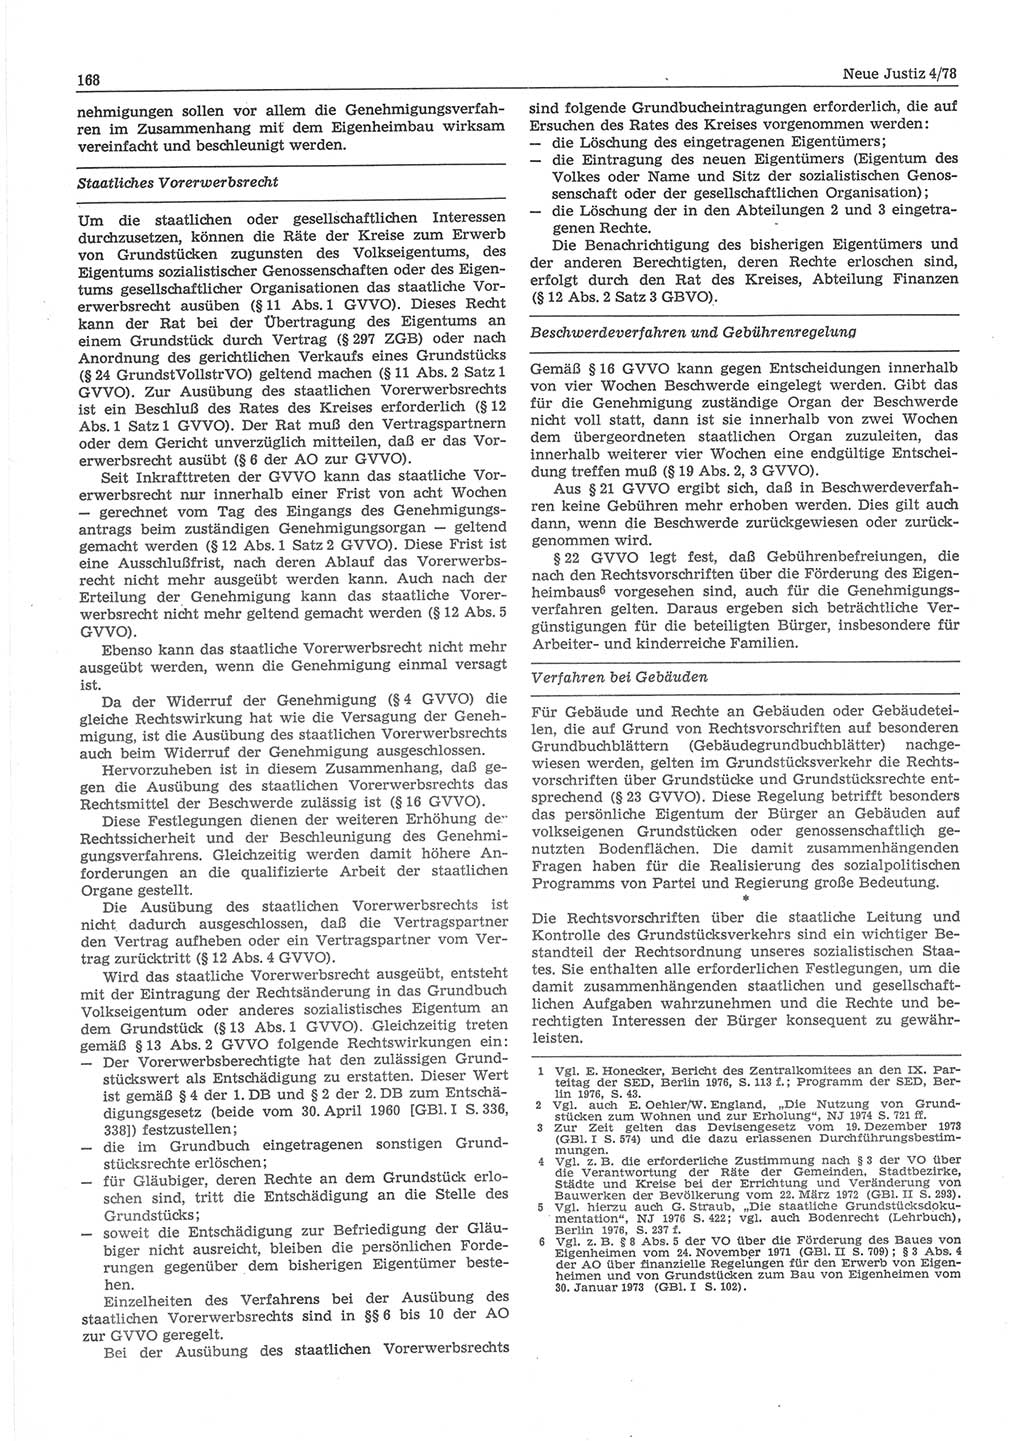 Neue Justiz (NJ), Zeitschrift für sozialistisches Recht und Gesetzlichkeit [Deutsche Demokratische Republik (DDR)], 32. Jahrgang 1978, Seite 168 (NJ DDR 1978, S. 168)